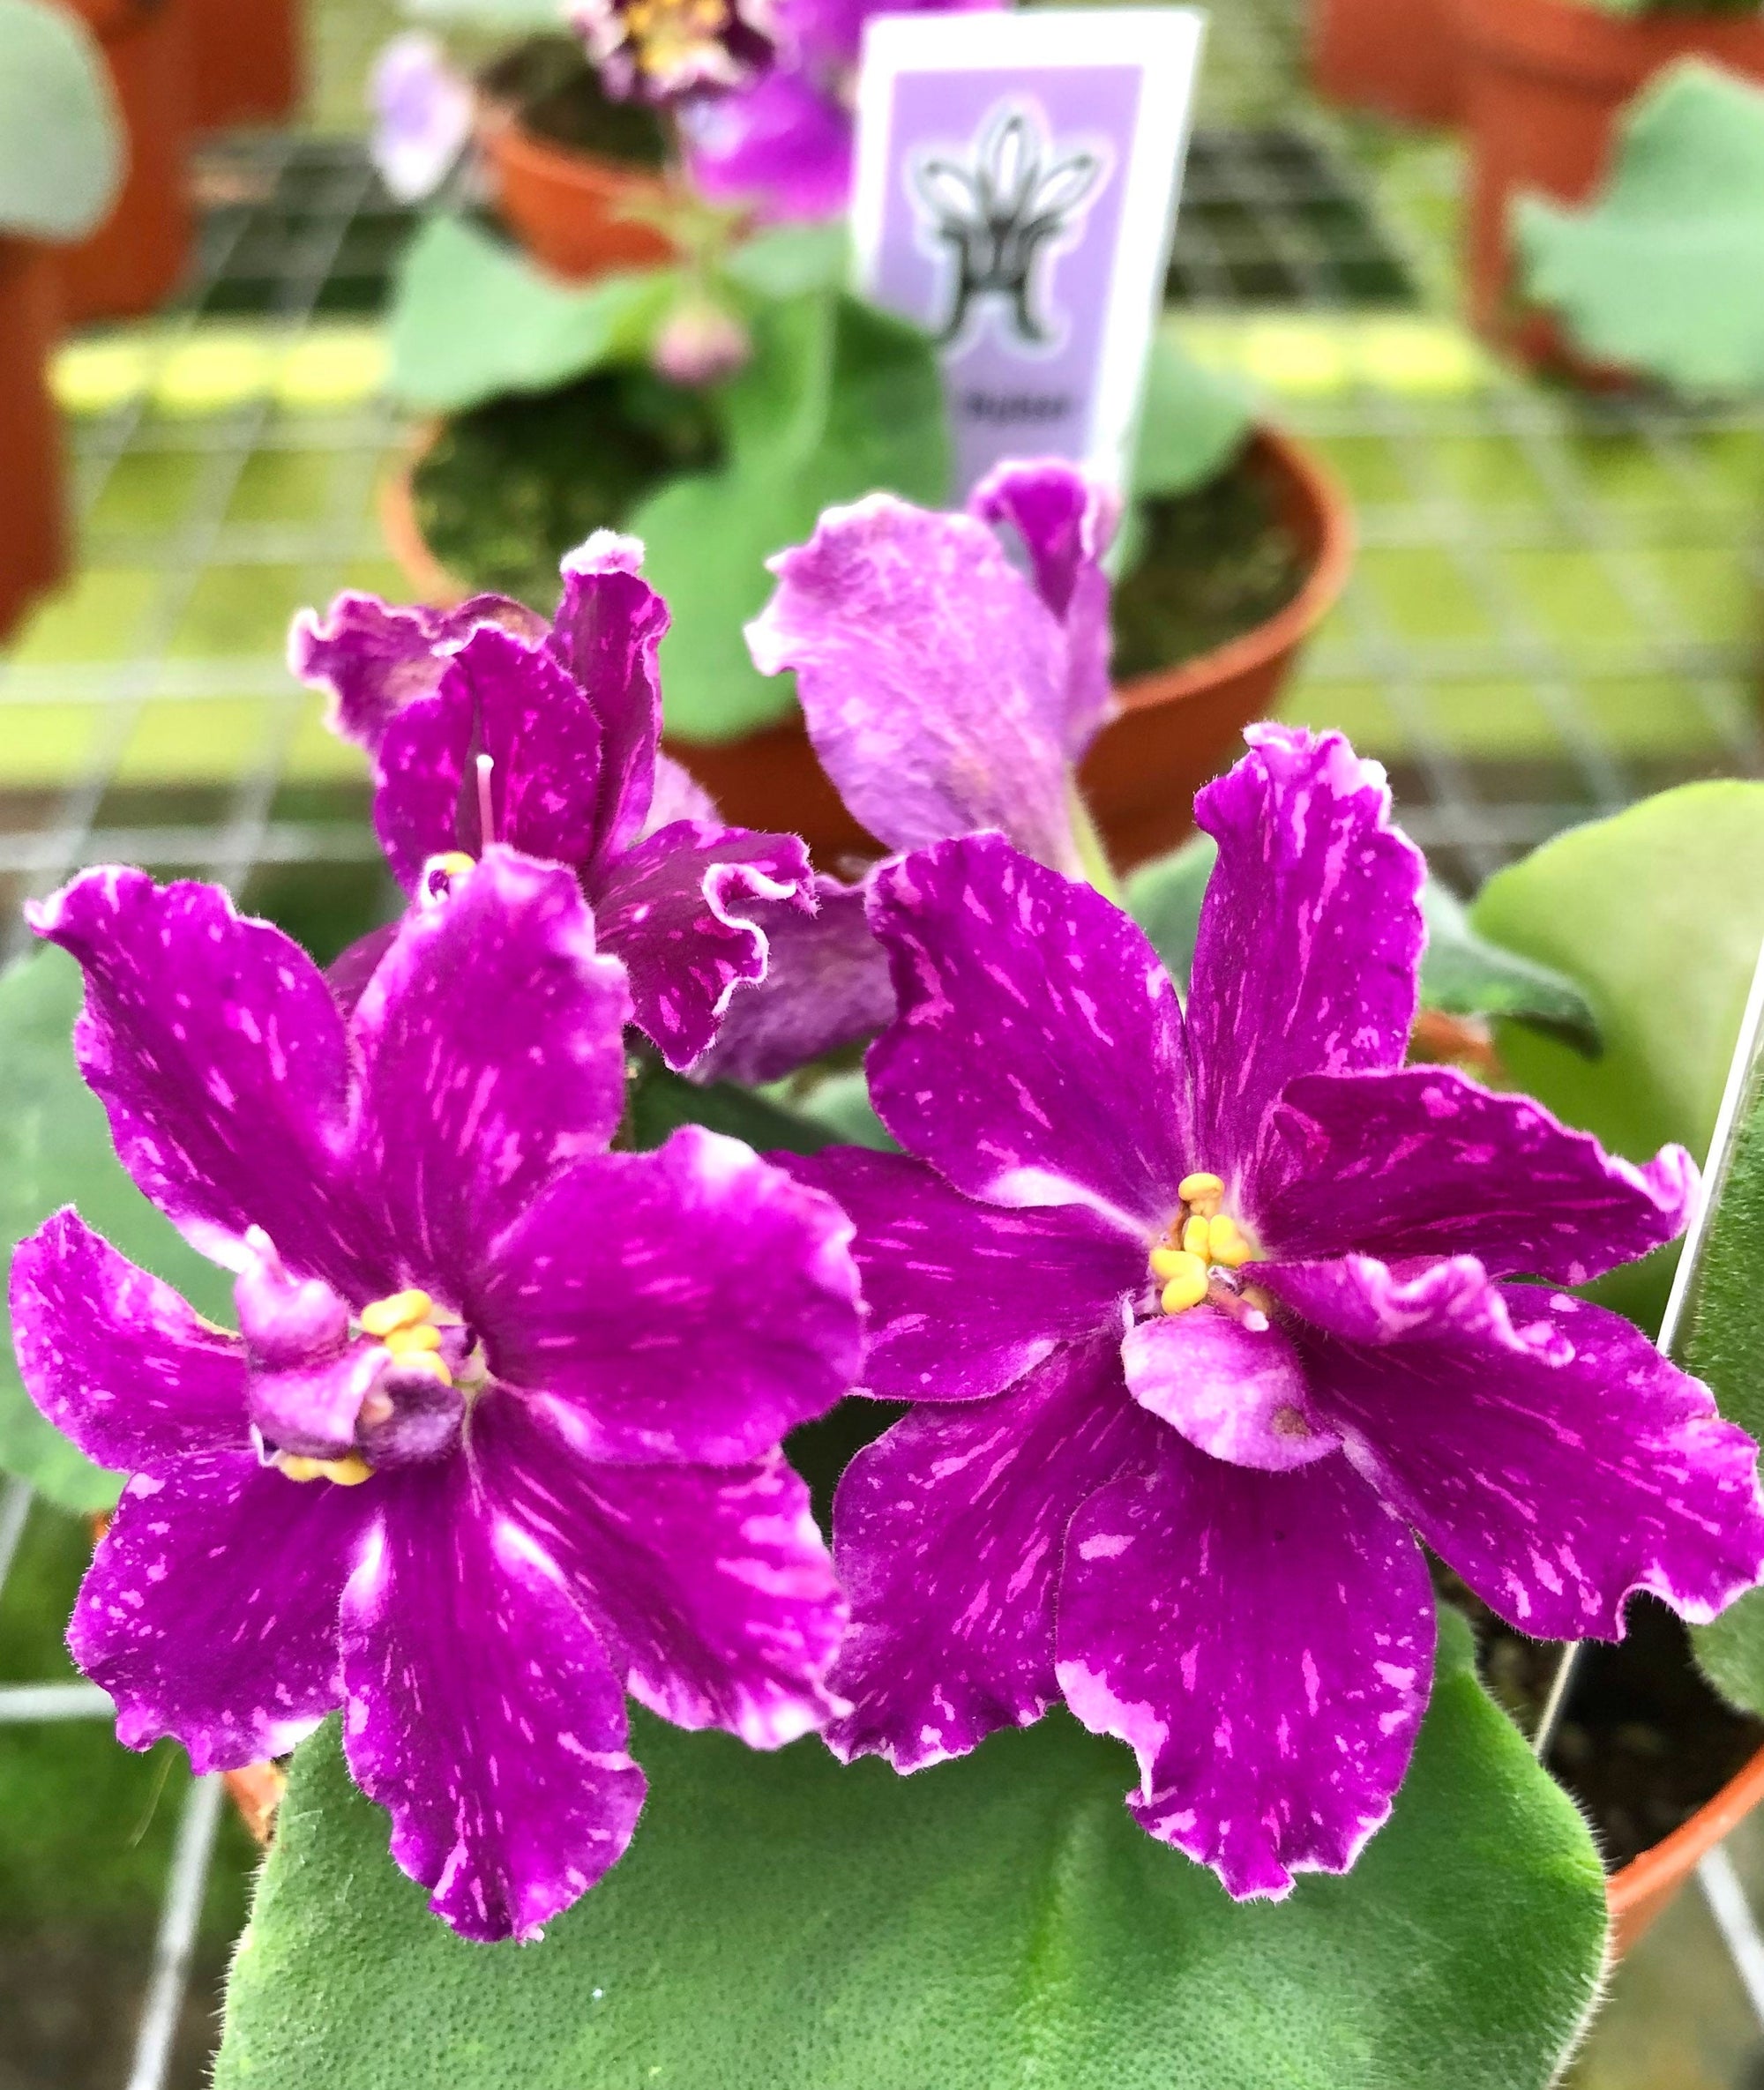 Live house plant variegated bloom African Violet ‘VaT Pulsar’ garden 4” flower Potted gift